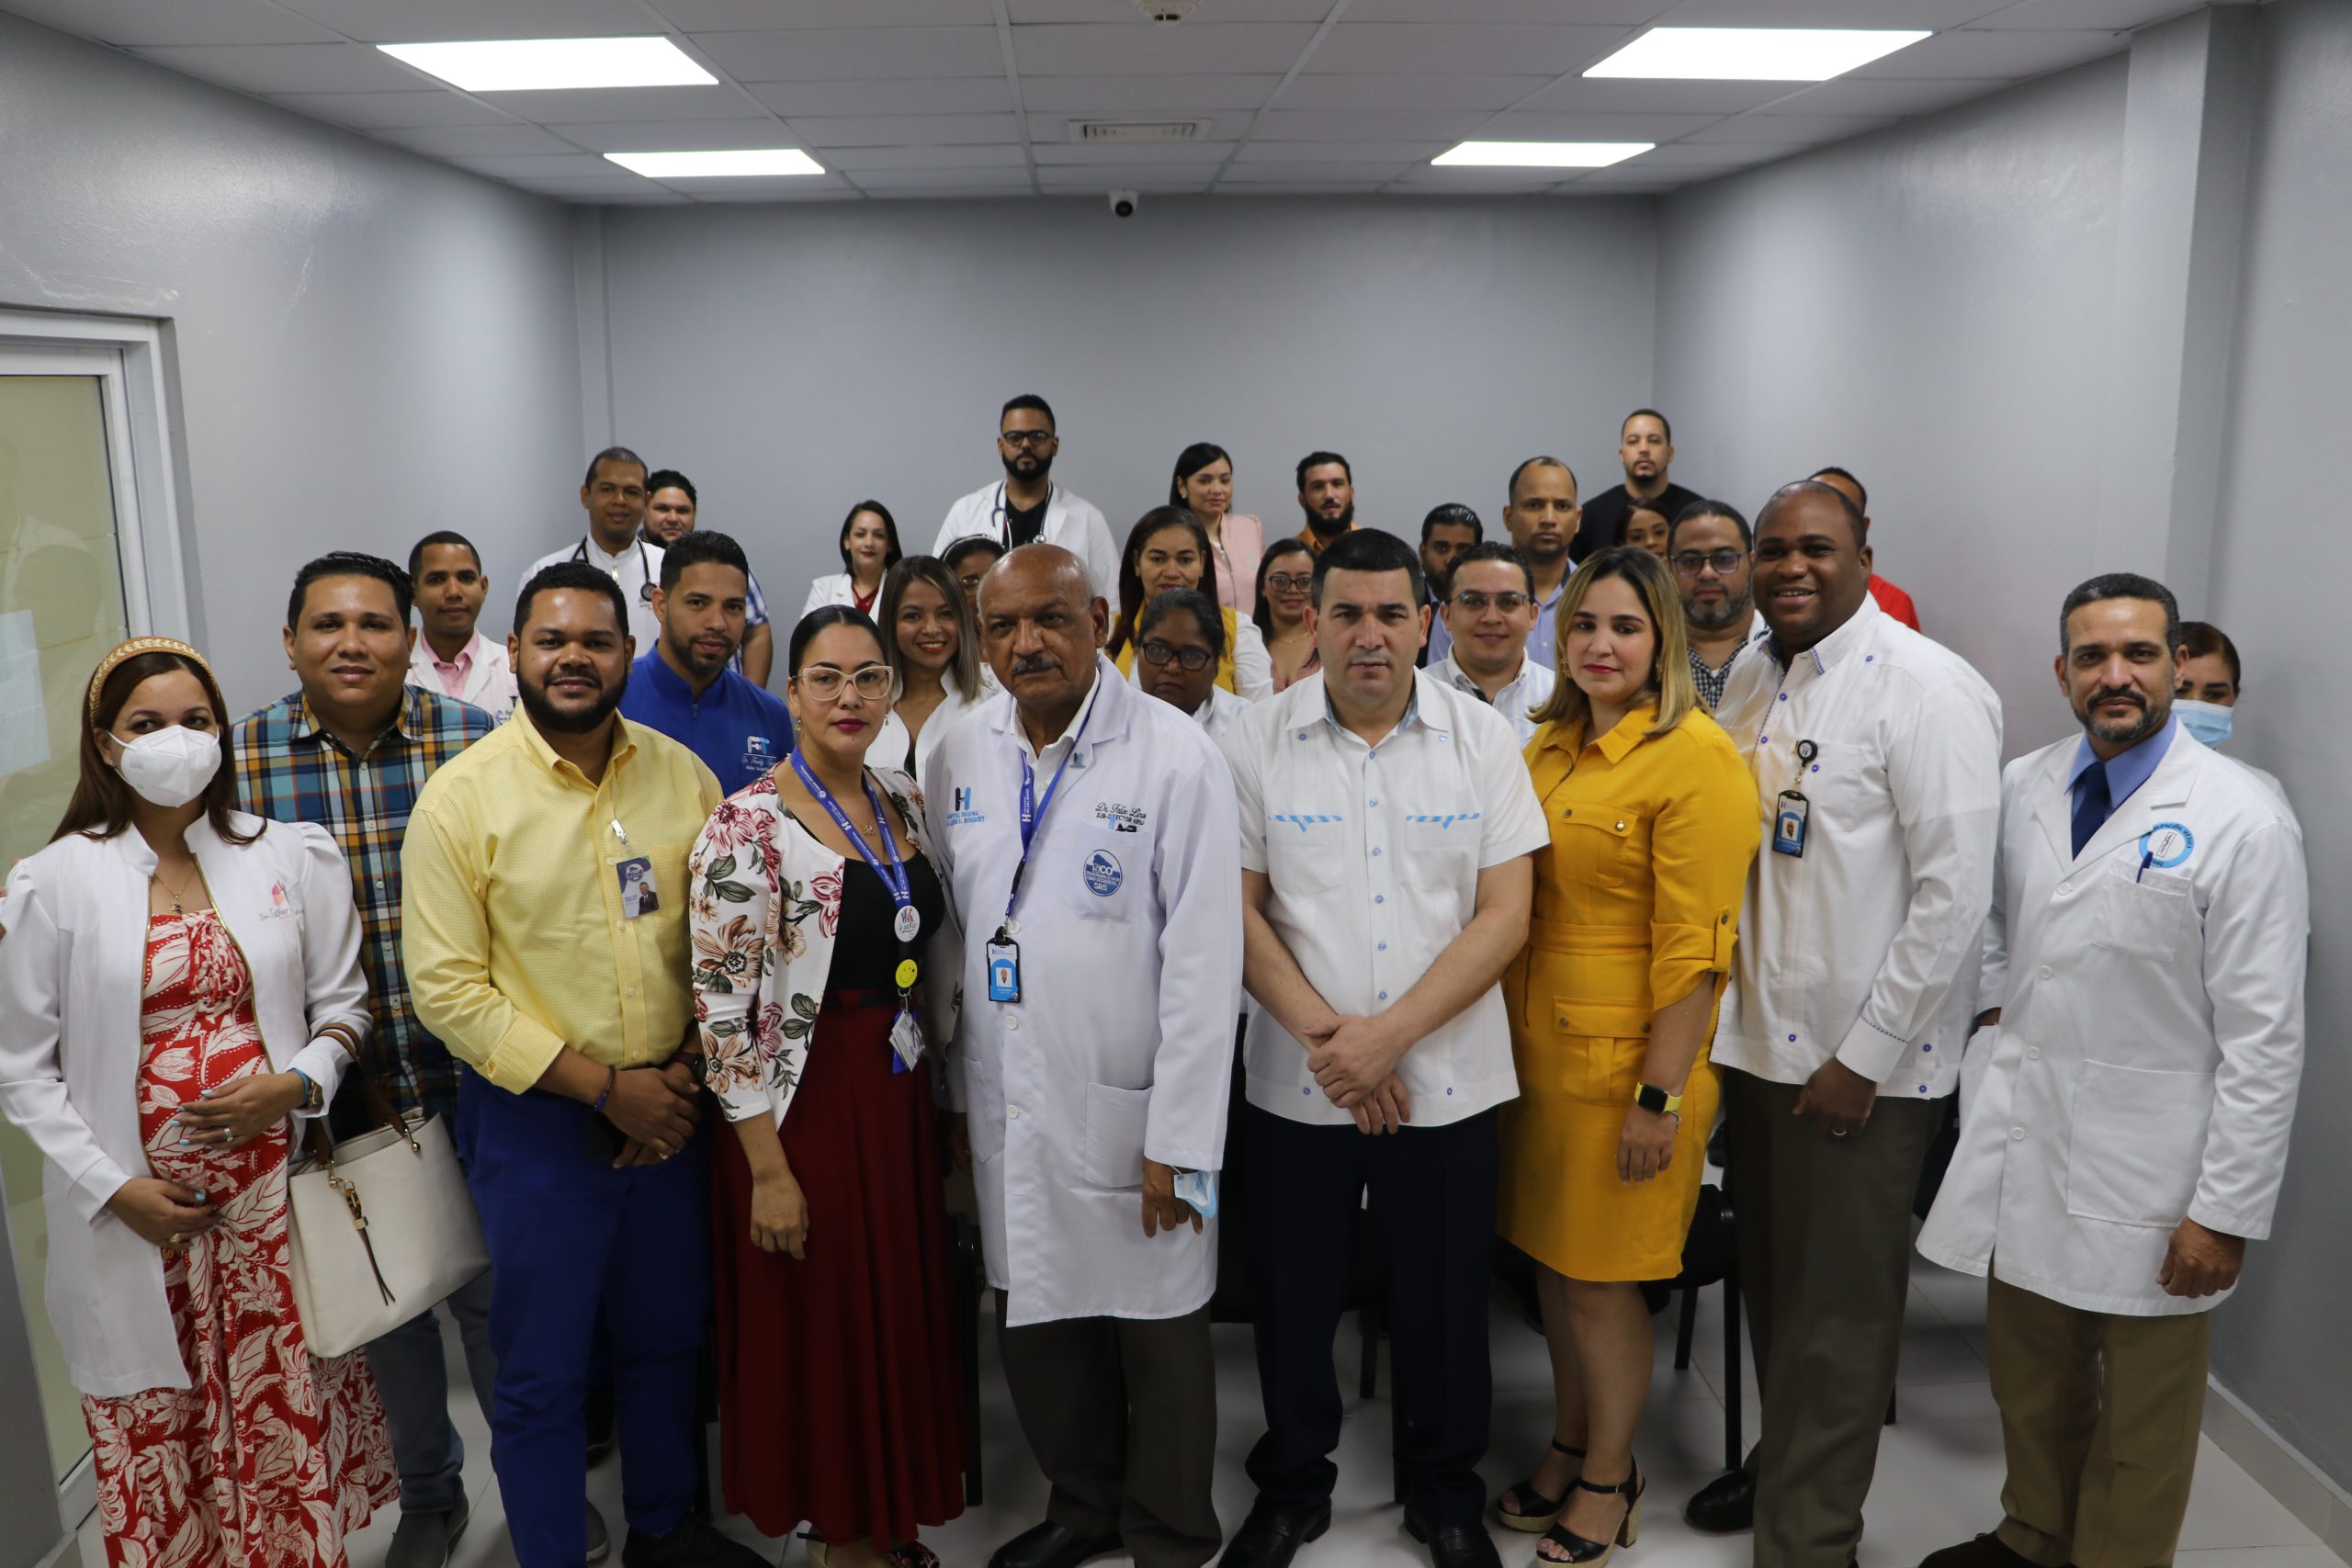 SRSCO, “Recibimiento e Inducción de 28 Nuevos Personal Médico y Paramédico nombrado en el Hosp. Regional Ing. Luis L. Bogaert Mao-Valverde”.